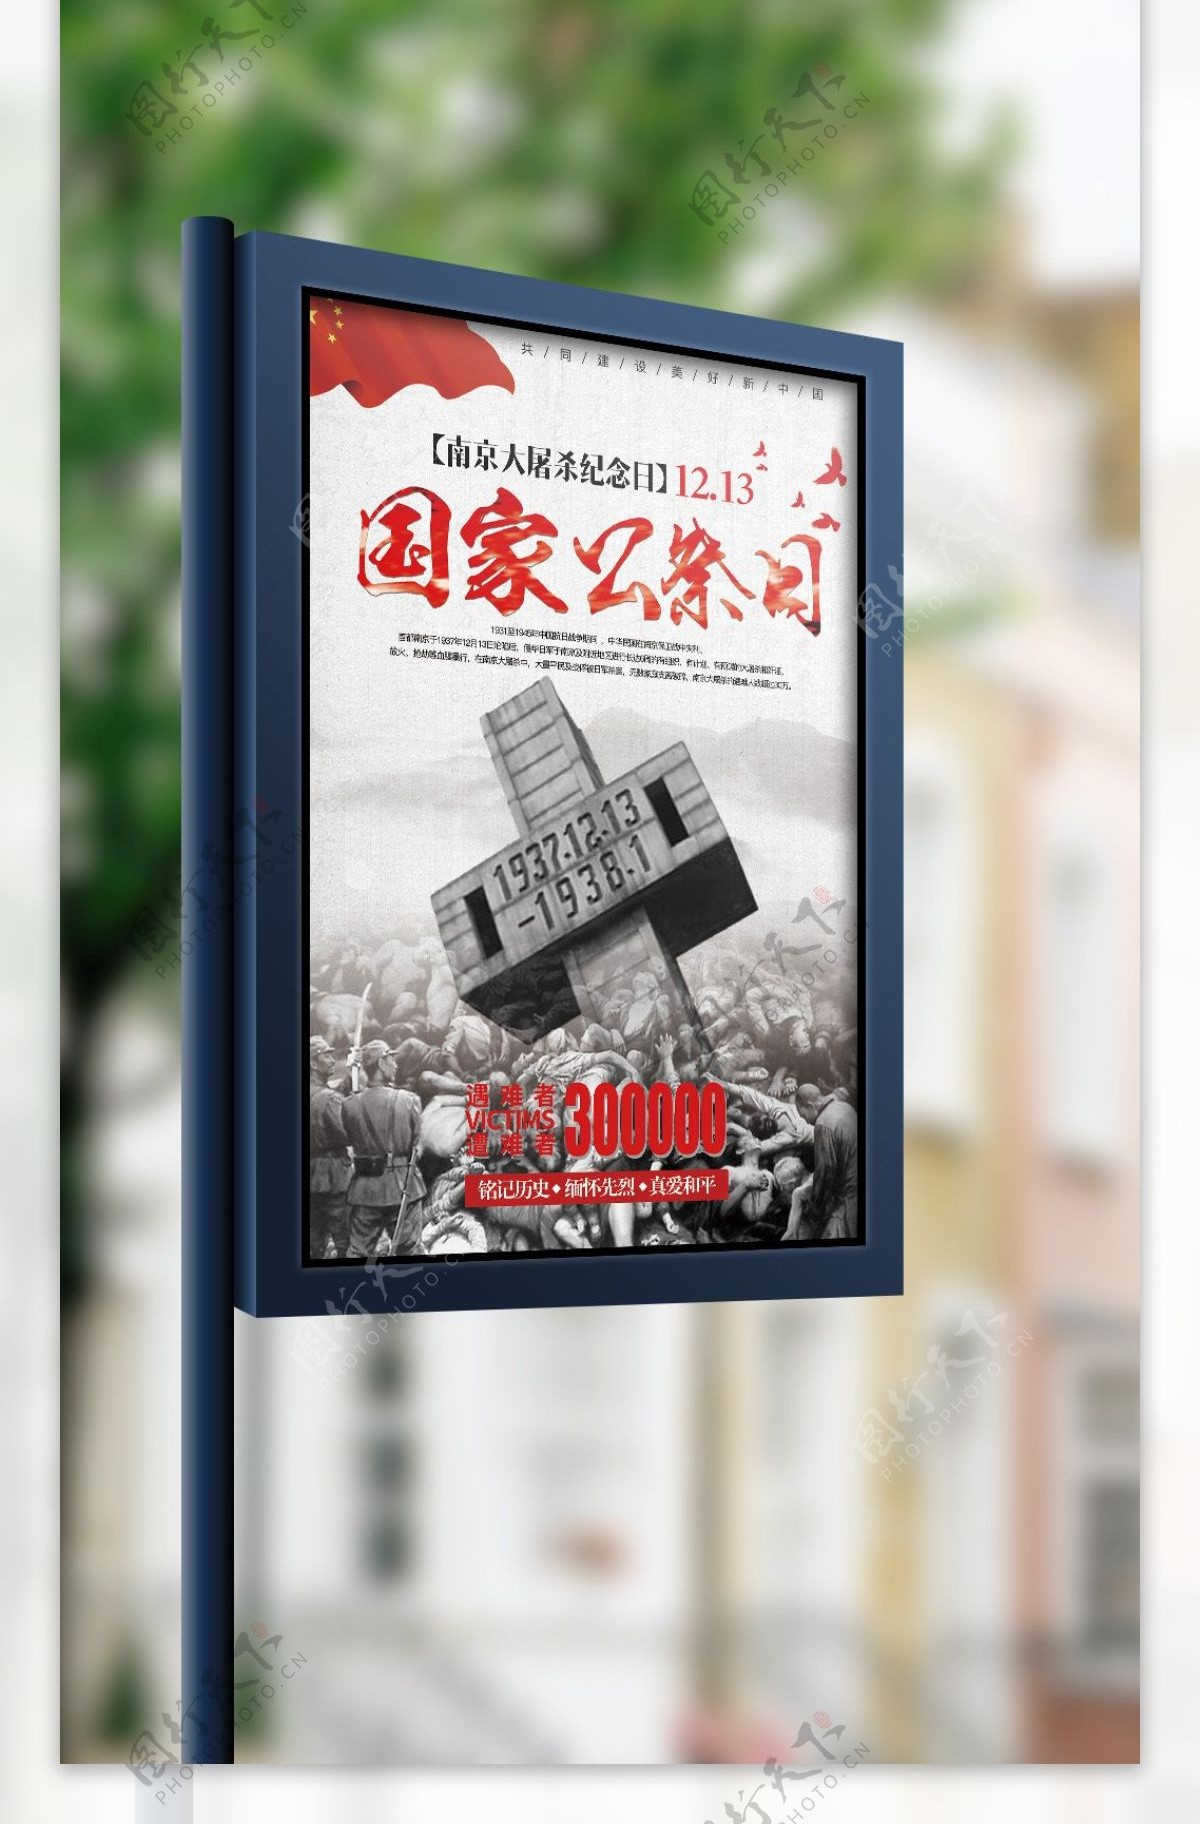 2017年南京大屠杀纪念日宣传海报